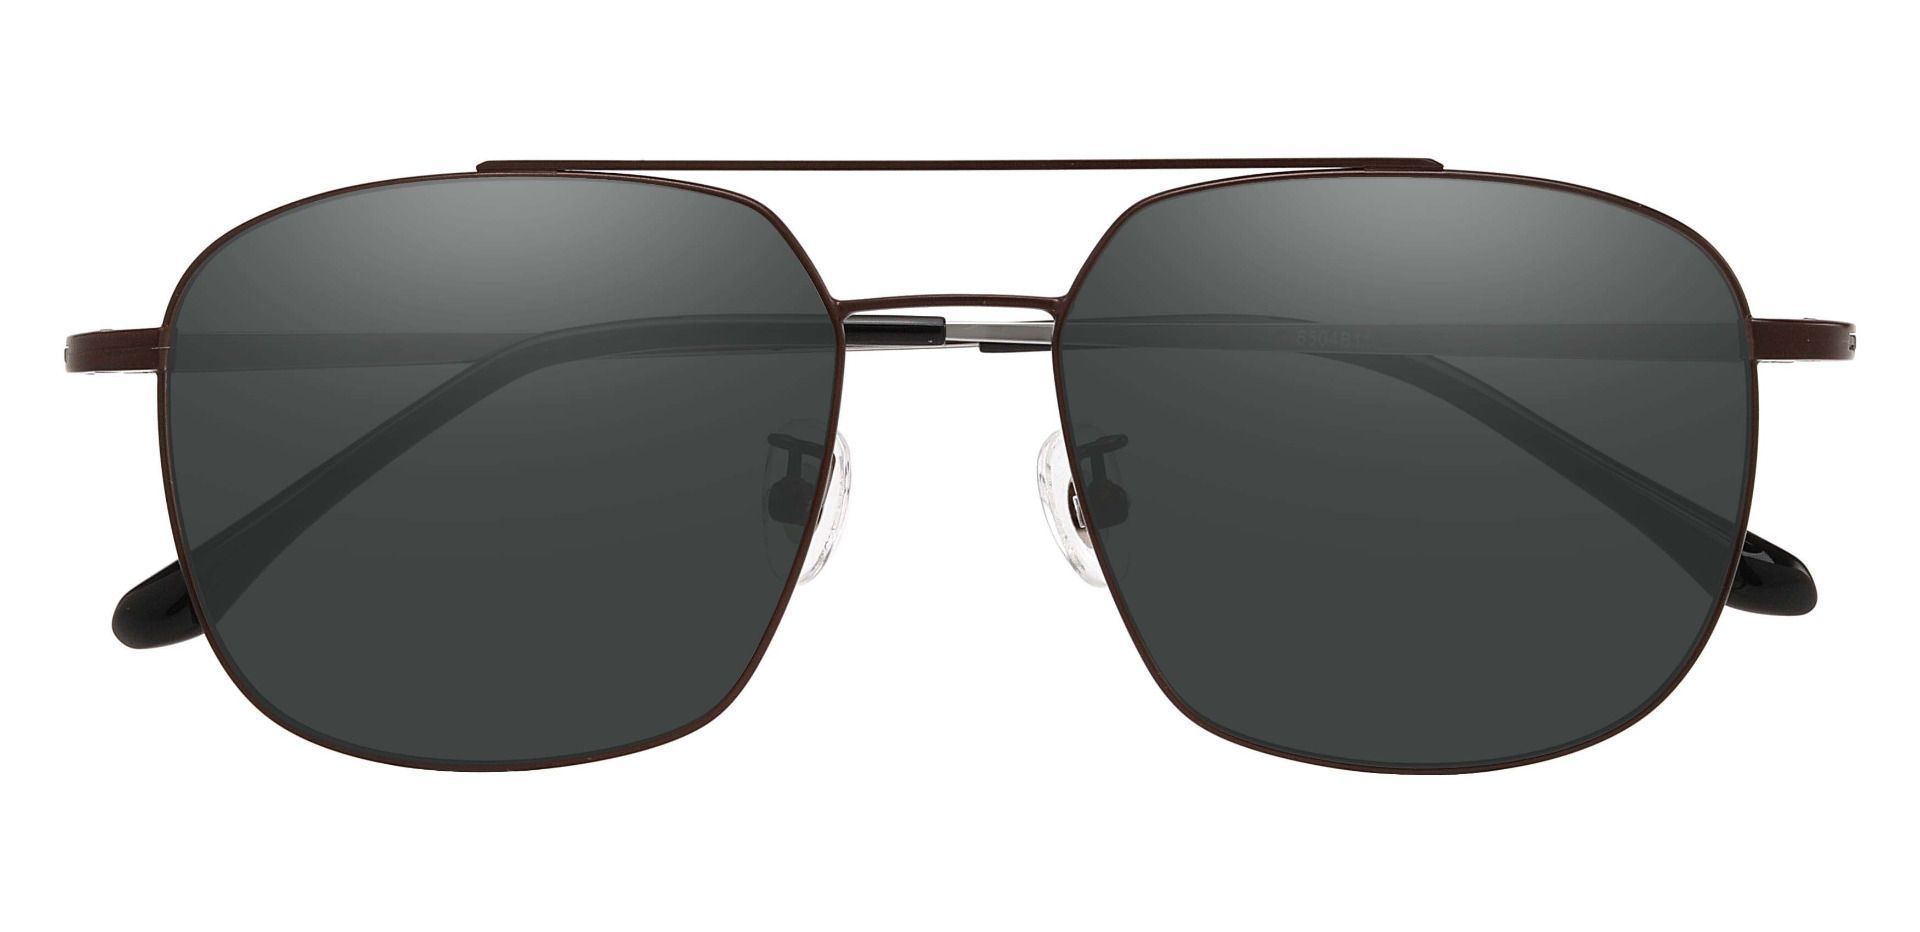 Trevor Aviator Reading Sunglasses - Brown Frame With Gray Lenses